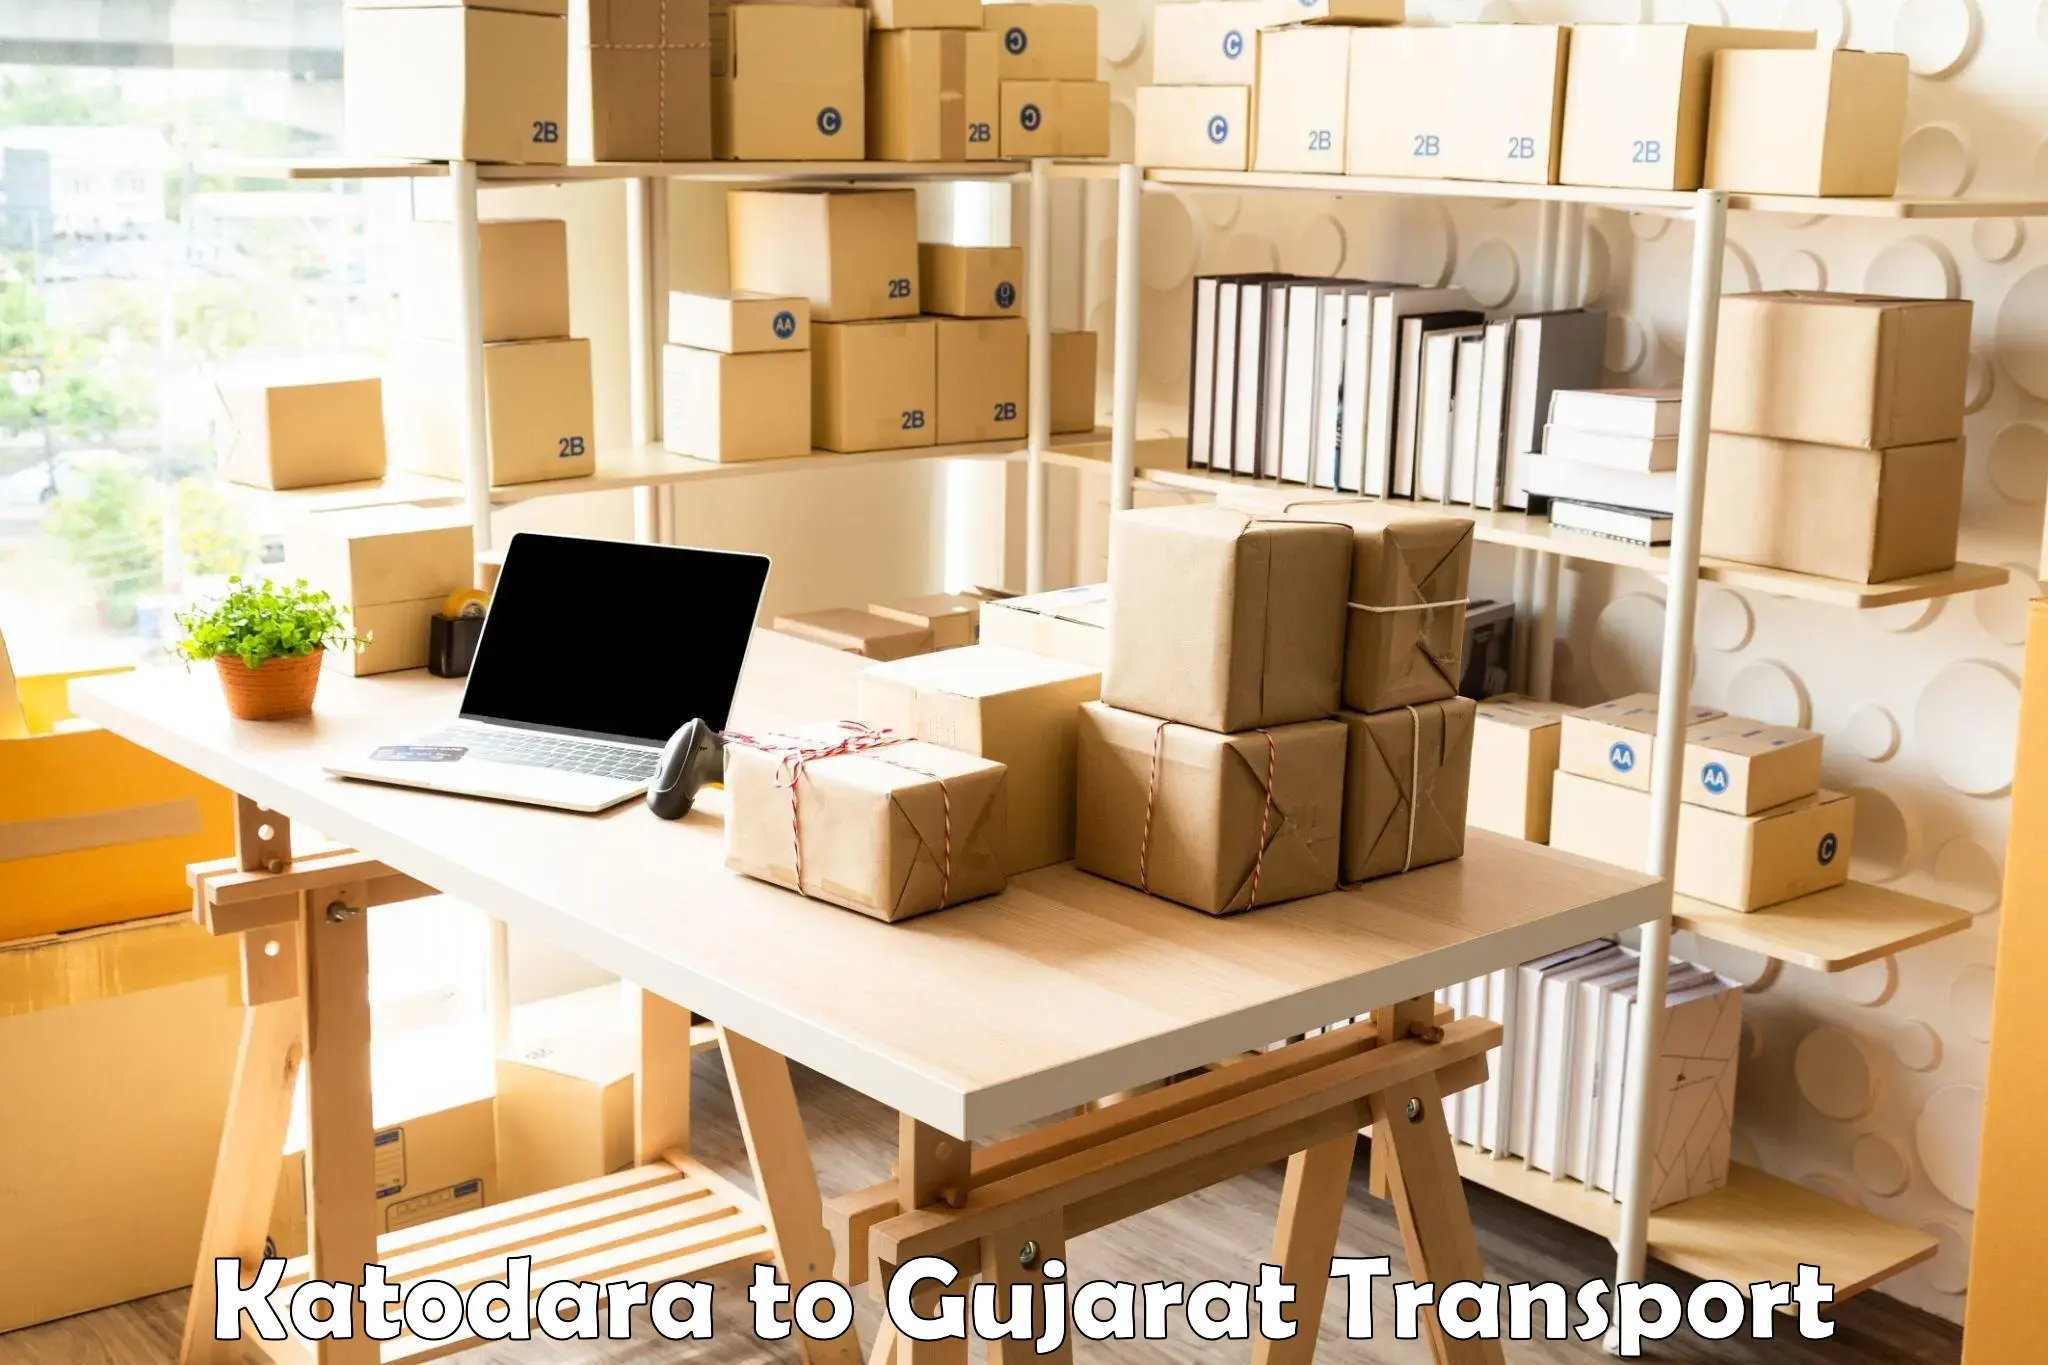 Land transport services Katodara to Patan Gujarat